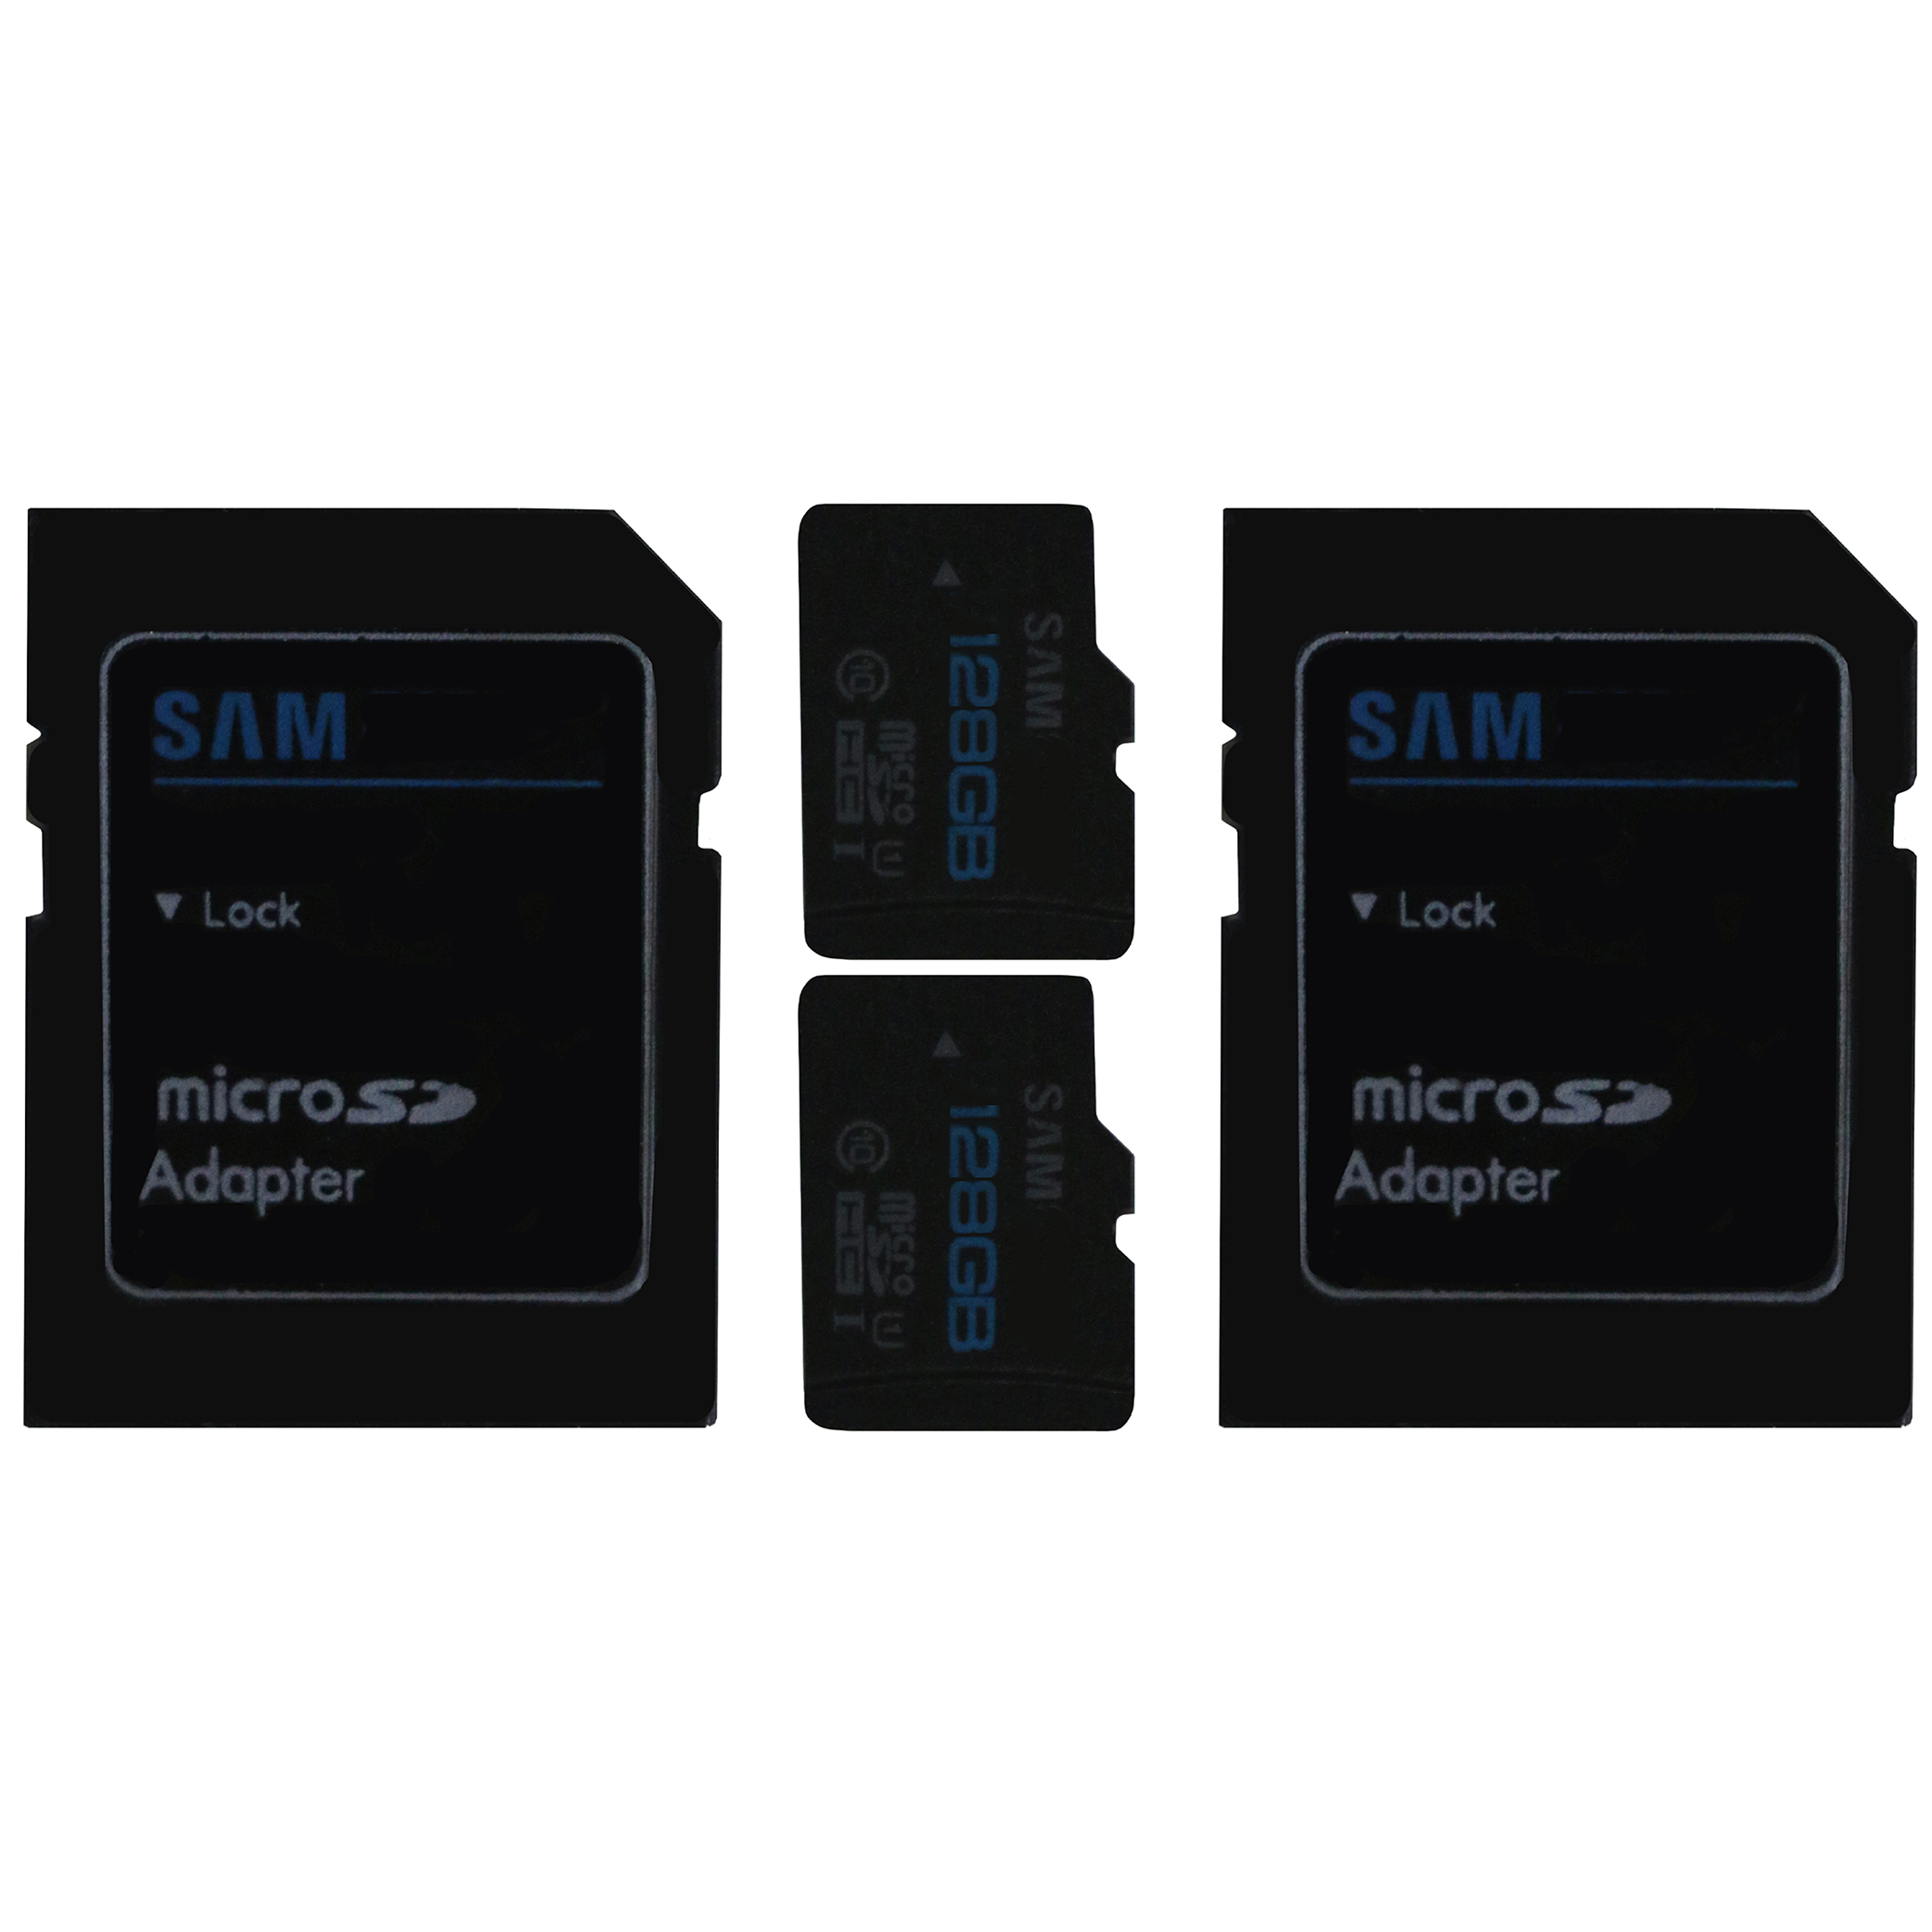 کارت حافظه microSDHC سم مدل Sam-Pro1 کلاس 10 استاندارد UHS-I U1 سرعت 85MBps ظرفیت 128 گیگابایت به همراه آداپتور SD بسته دو عددی